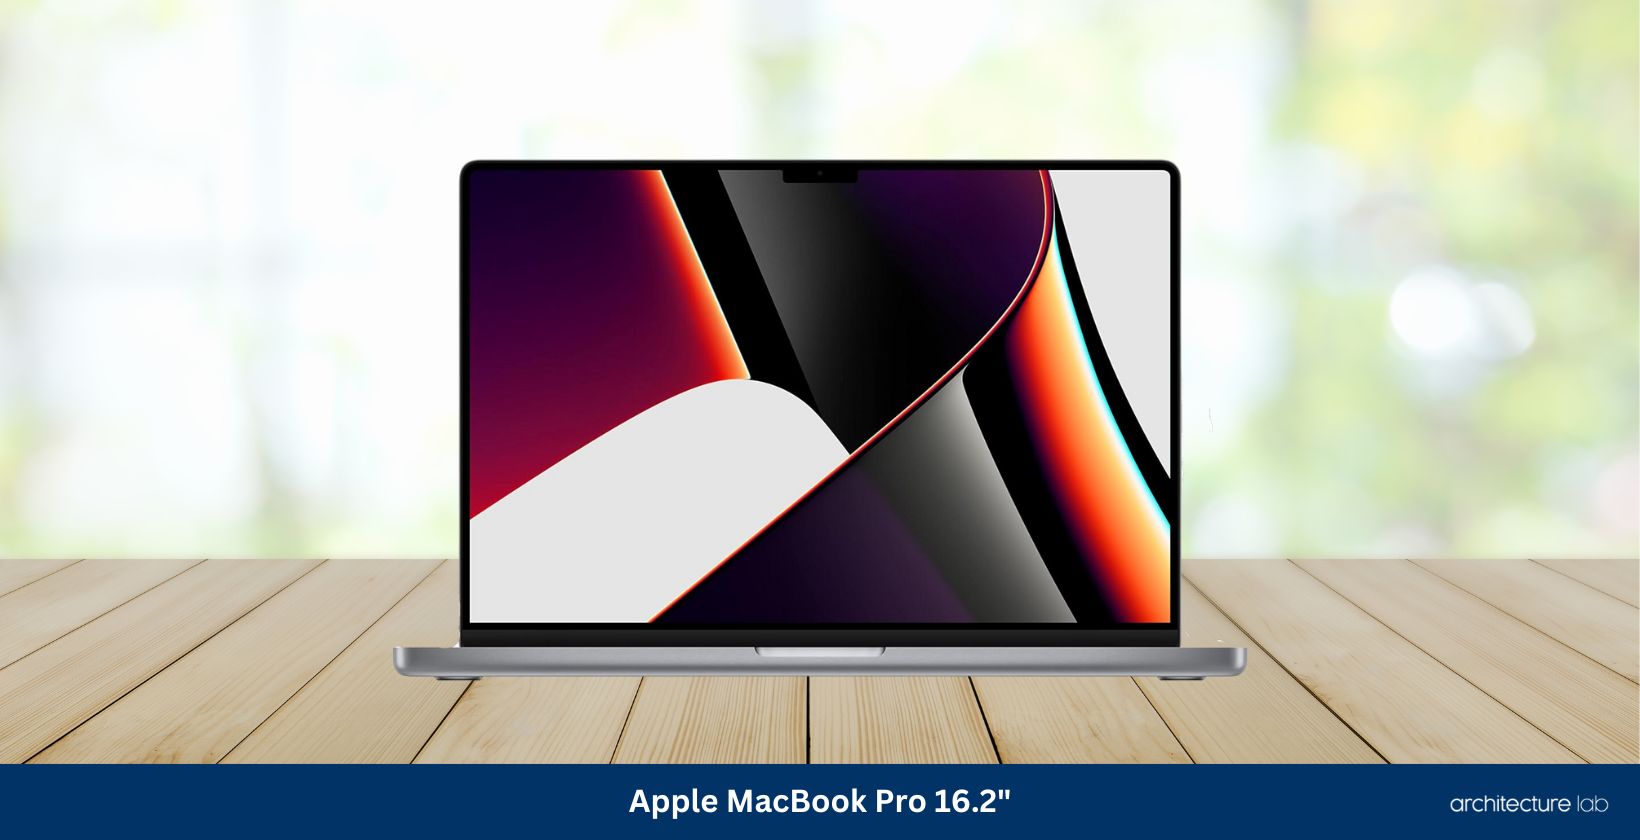 Apple macbook pro 16. 2